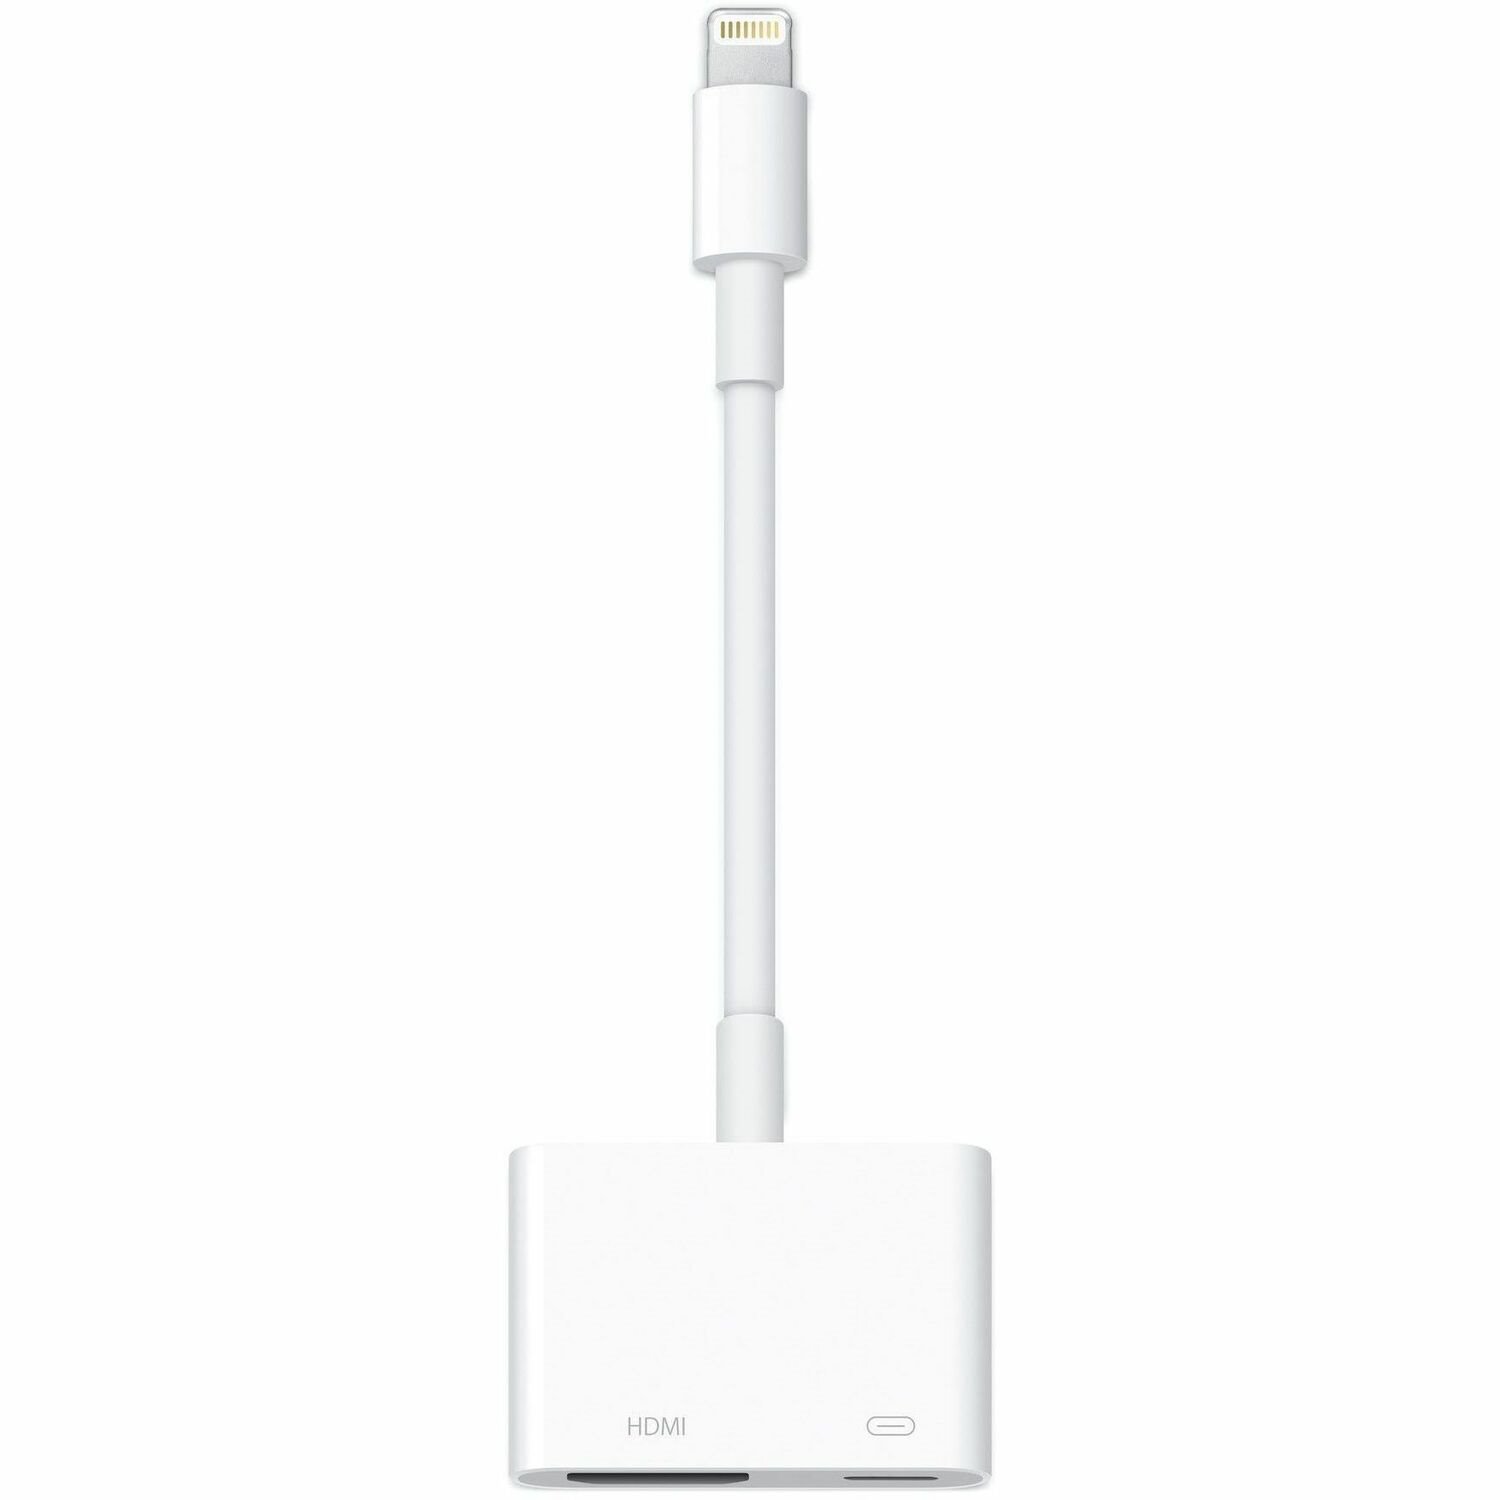 Apple A/V Adapter